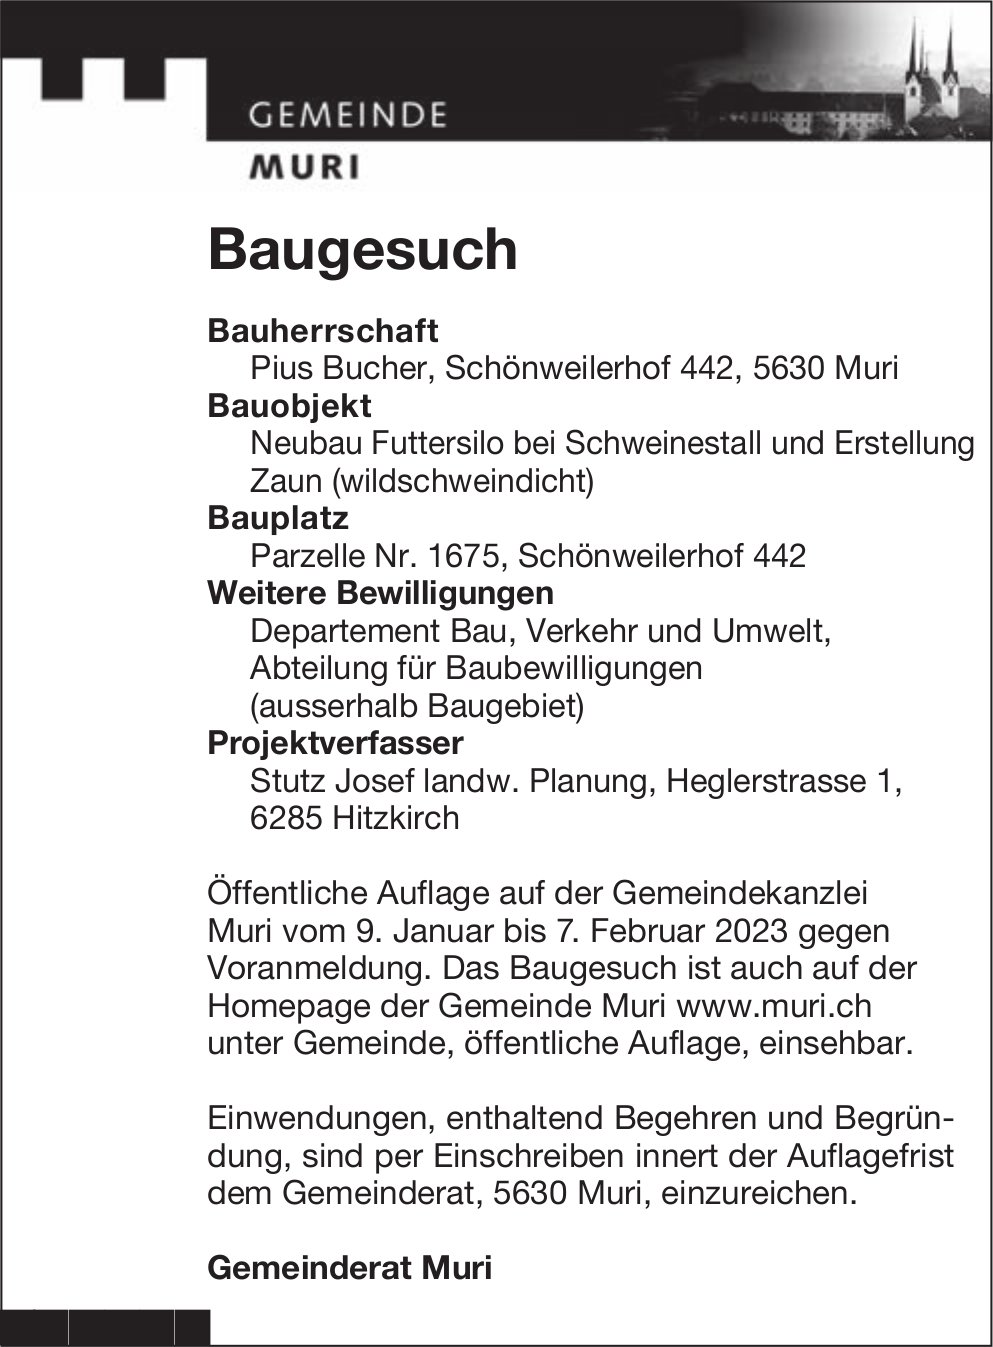 Baugesuche, Muri - Pius Bucher